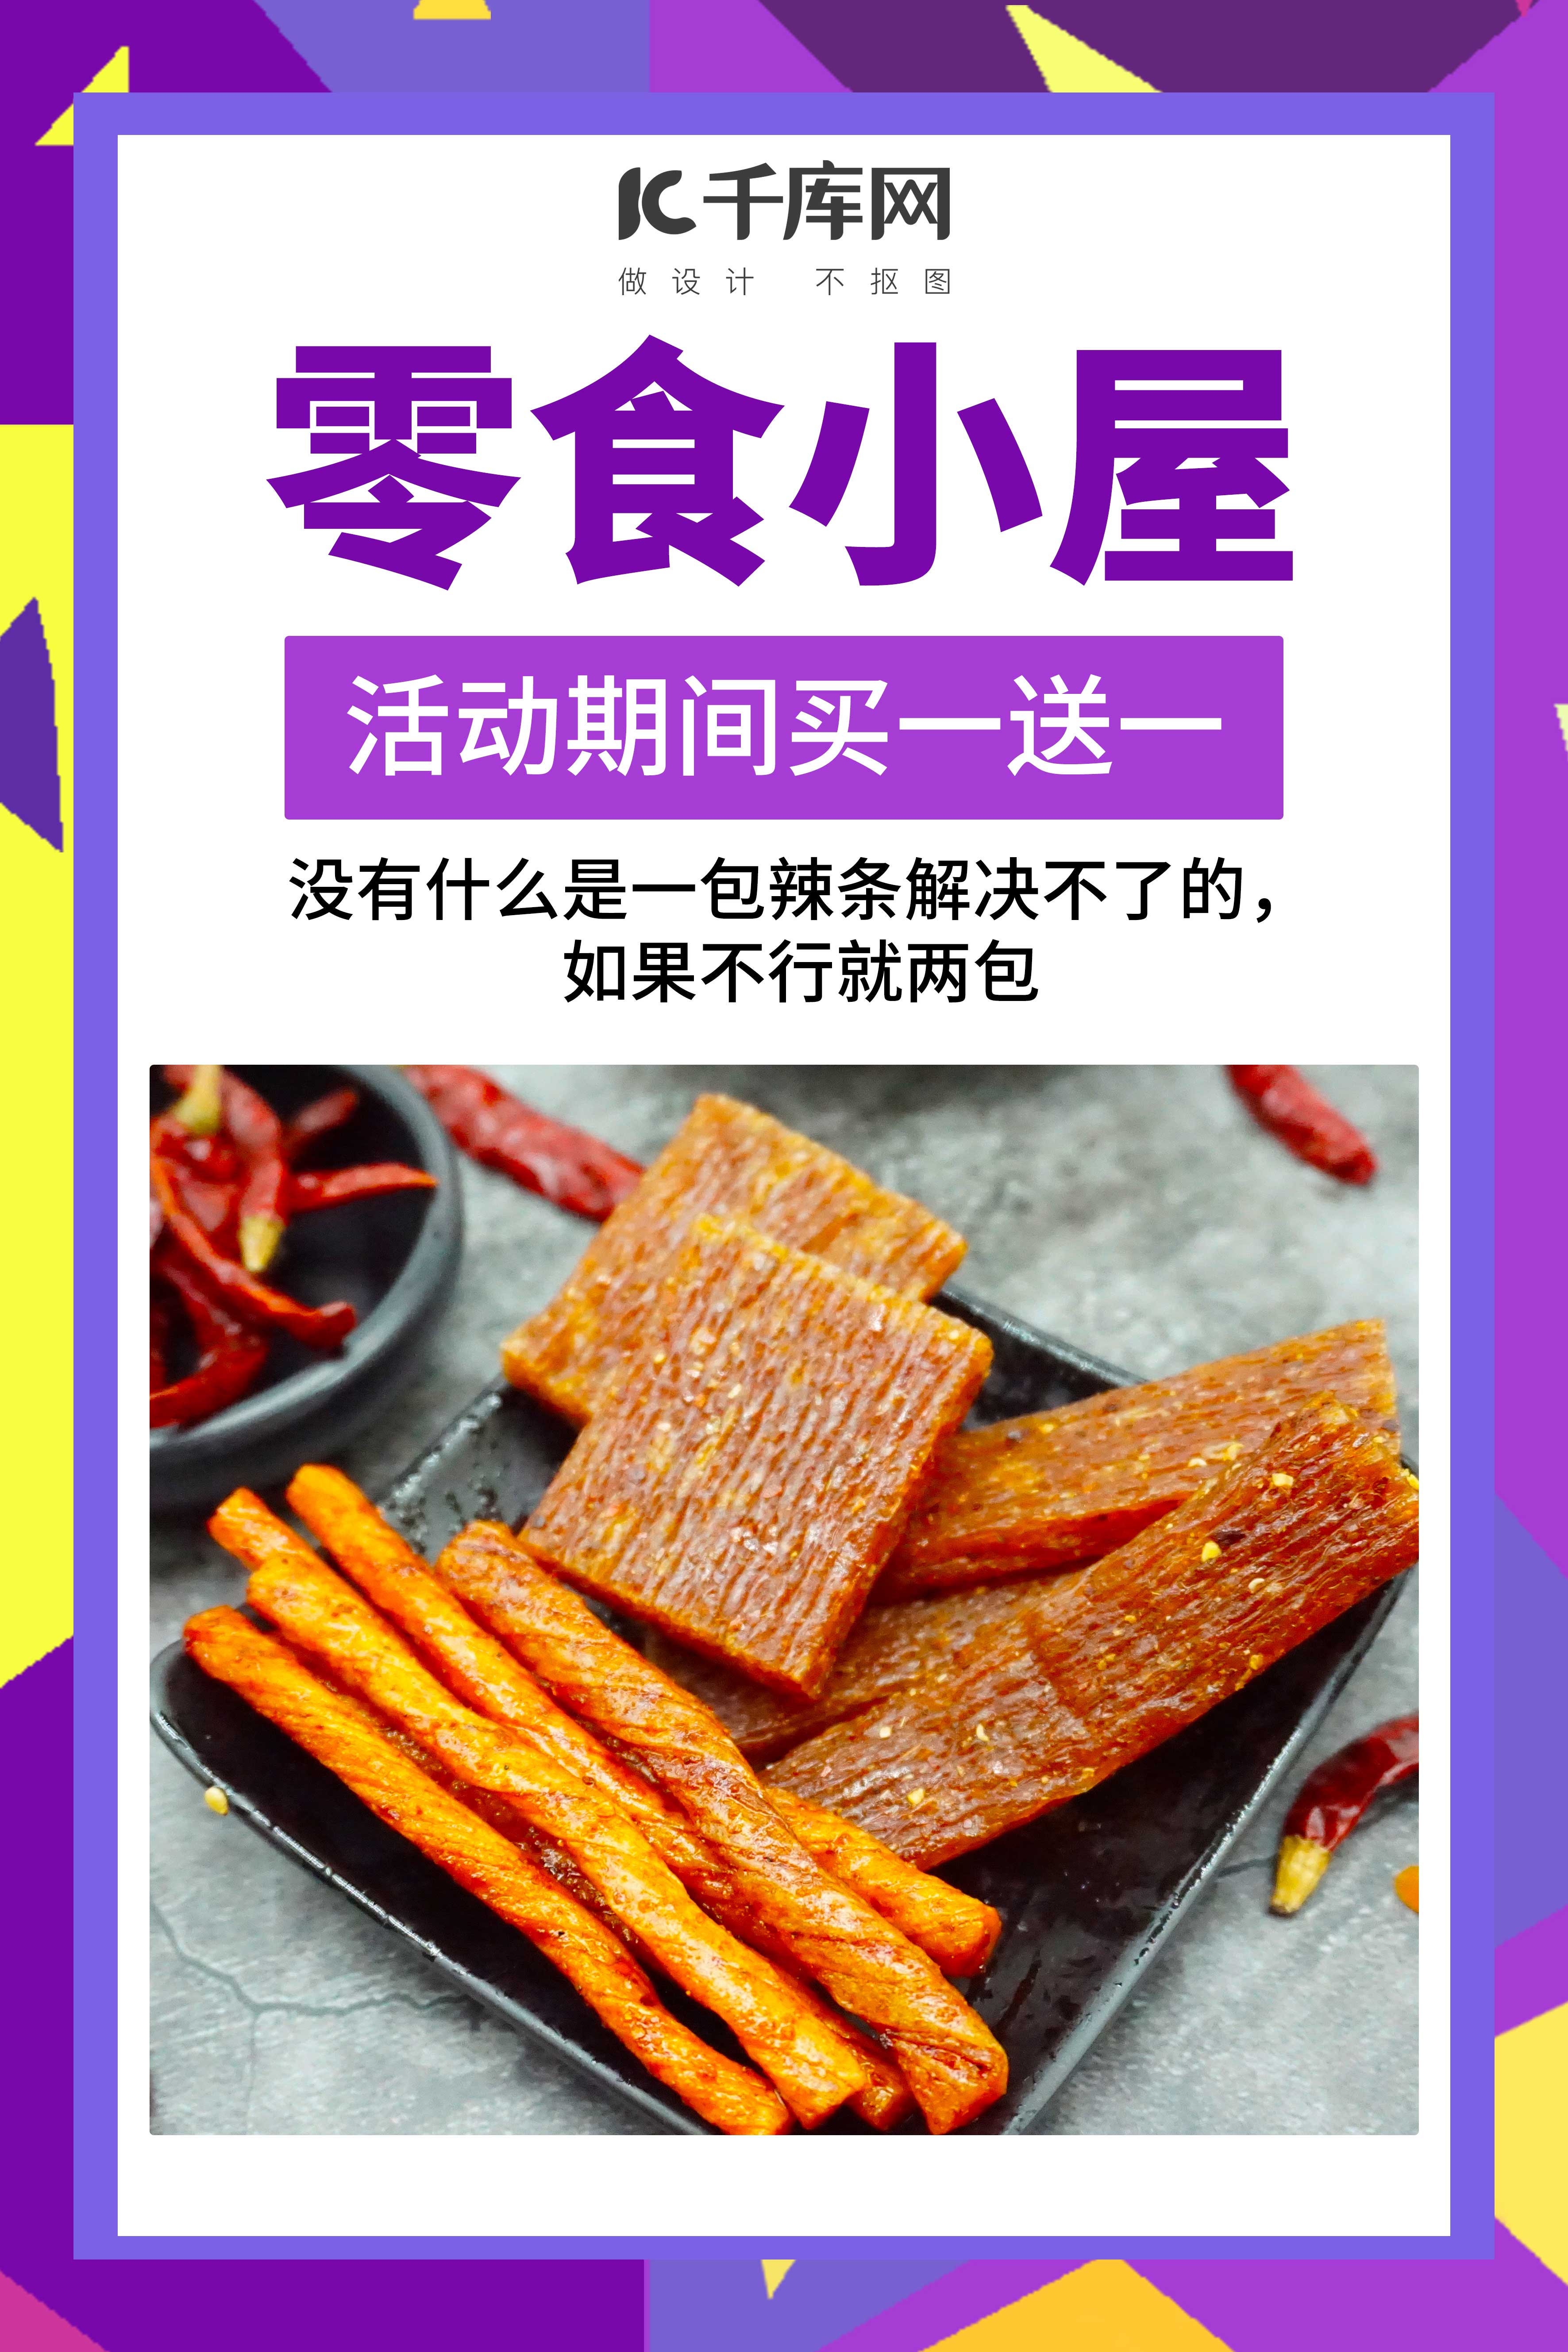 零食小屋辣条休闲食品促销紫色创意海报图片